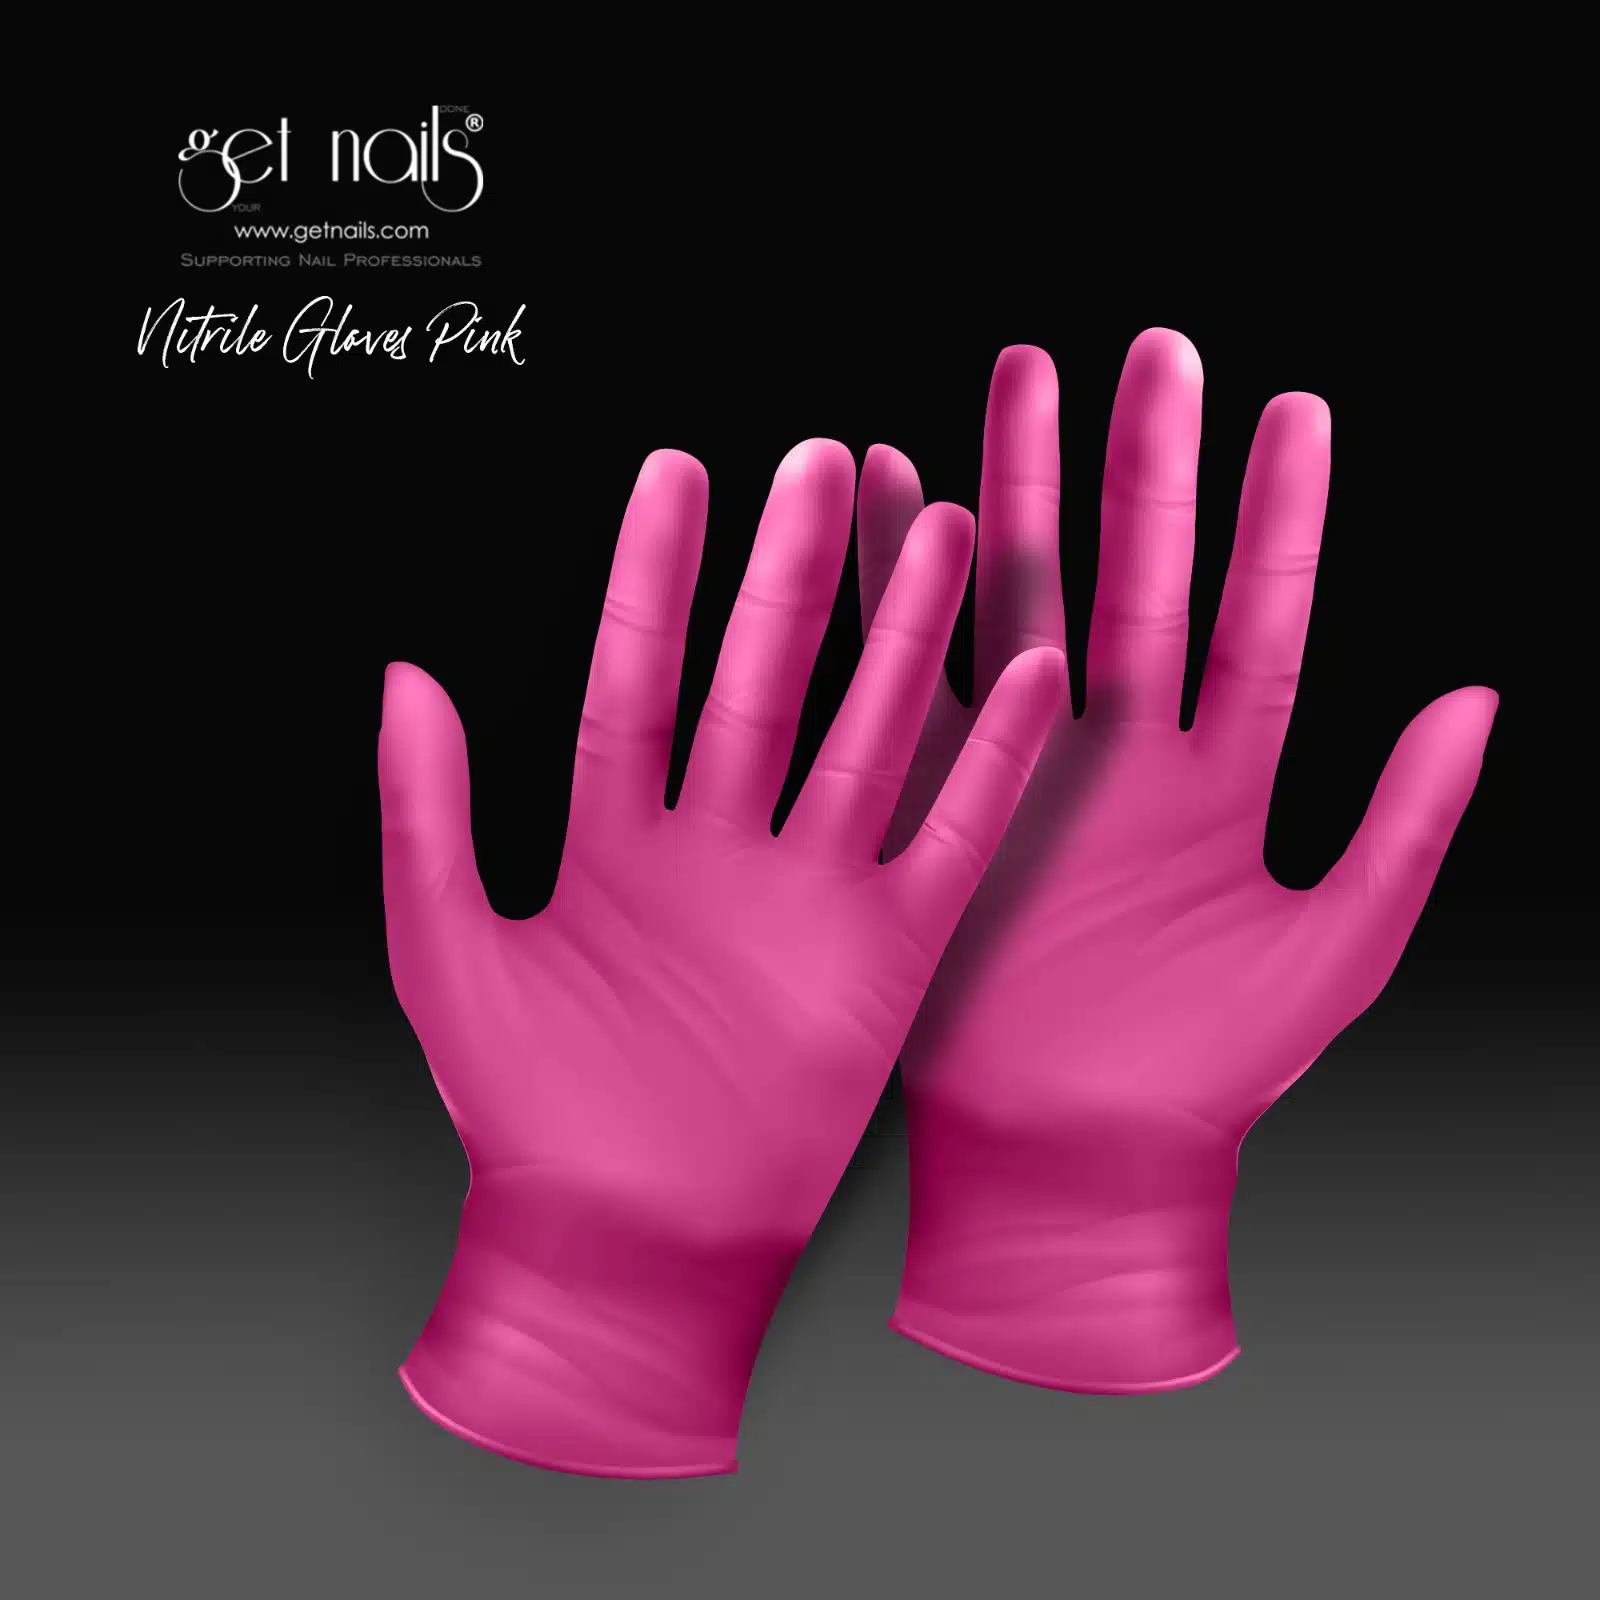 Get Nails Austria - Mănuși de igienă mărimea S, 10 bucăți (roz)